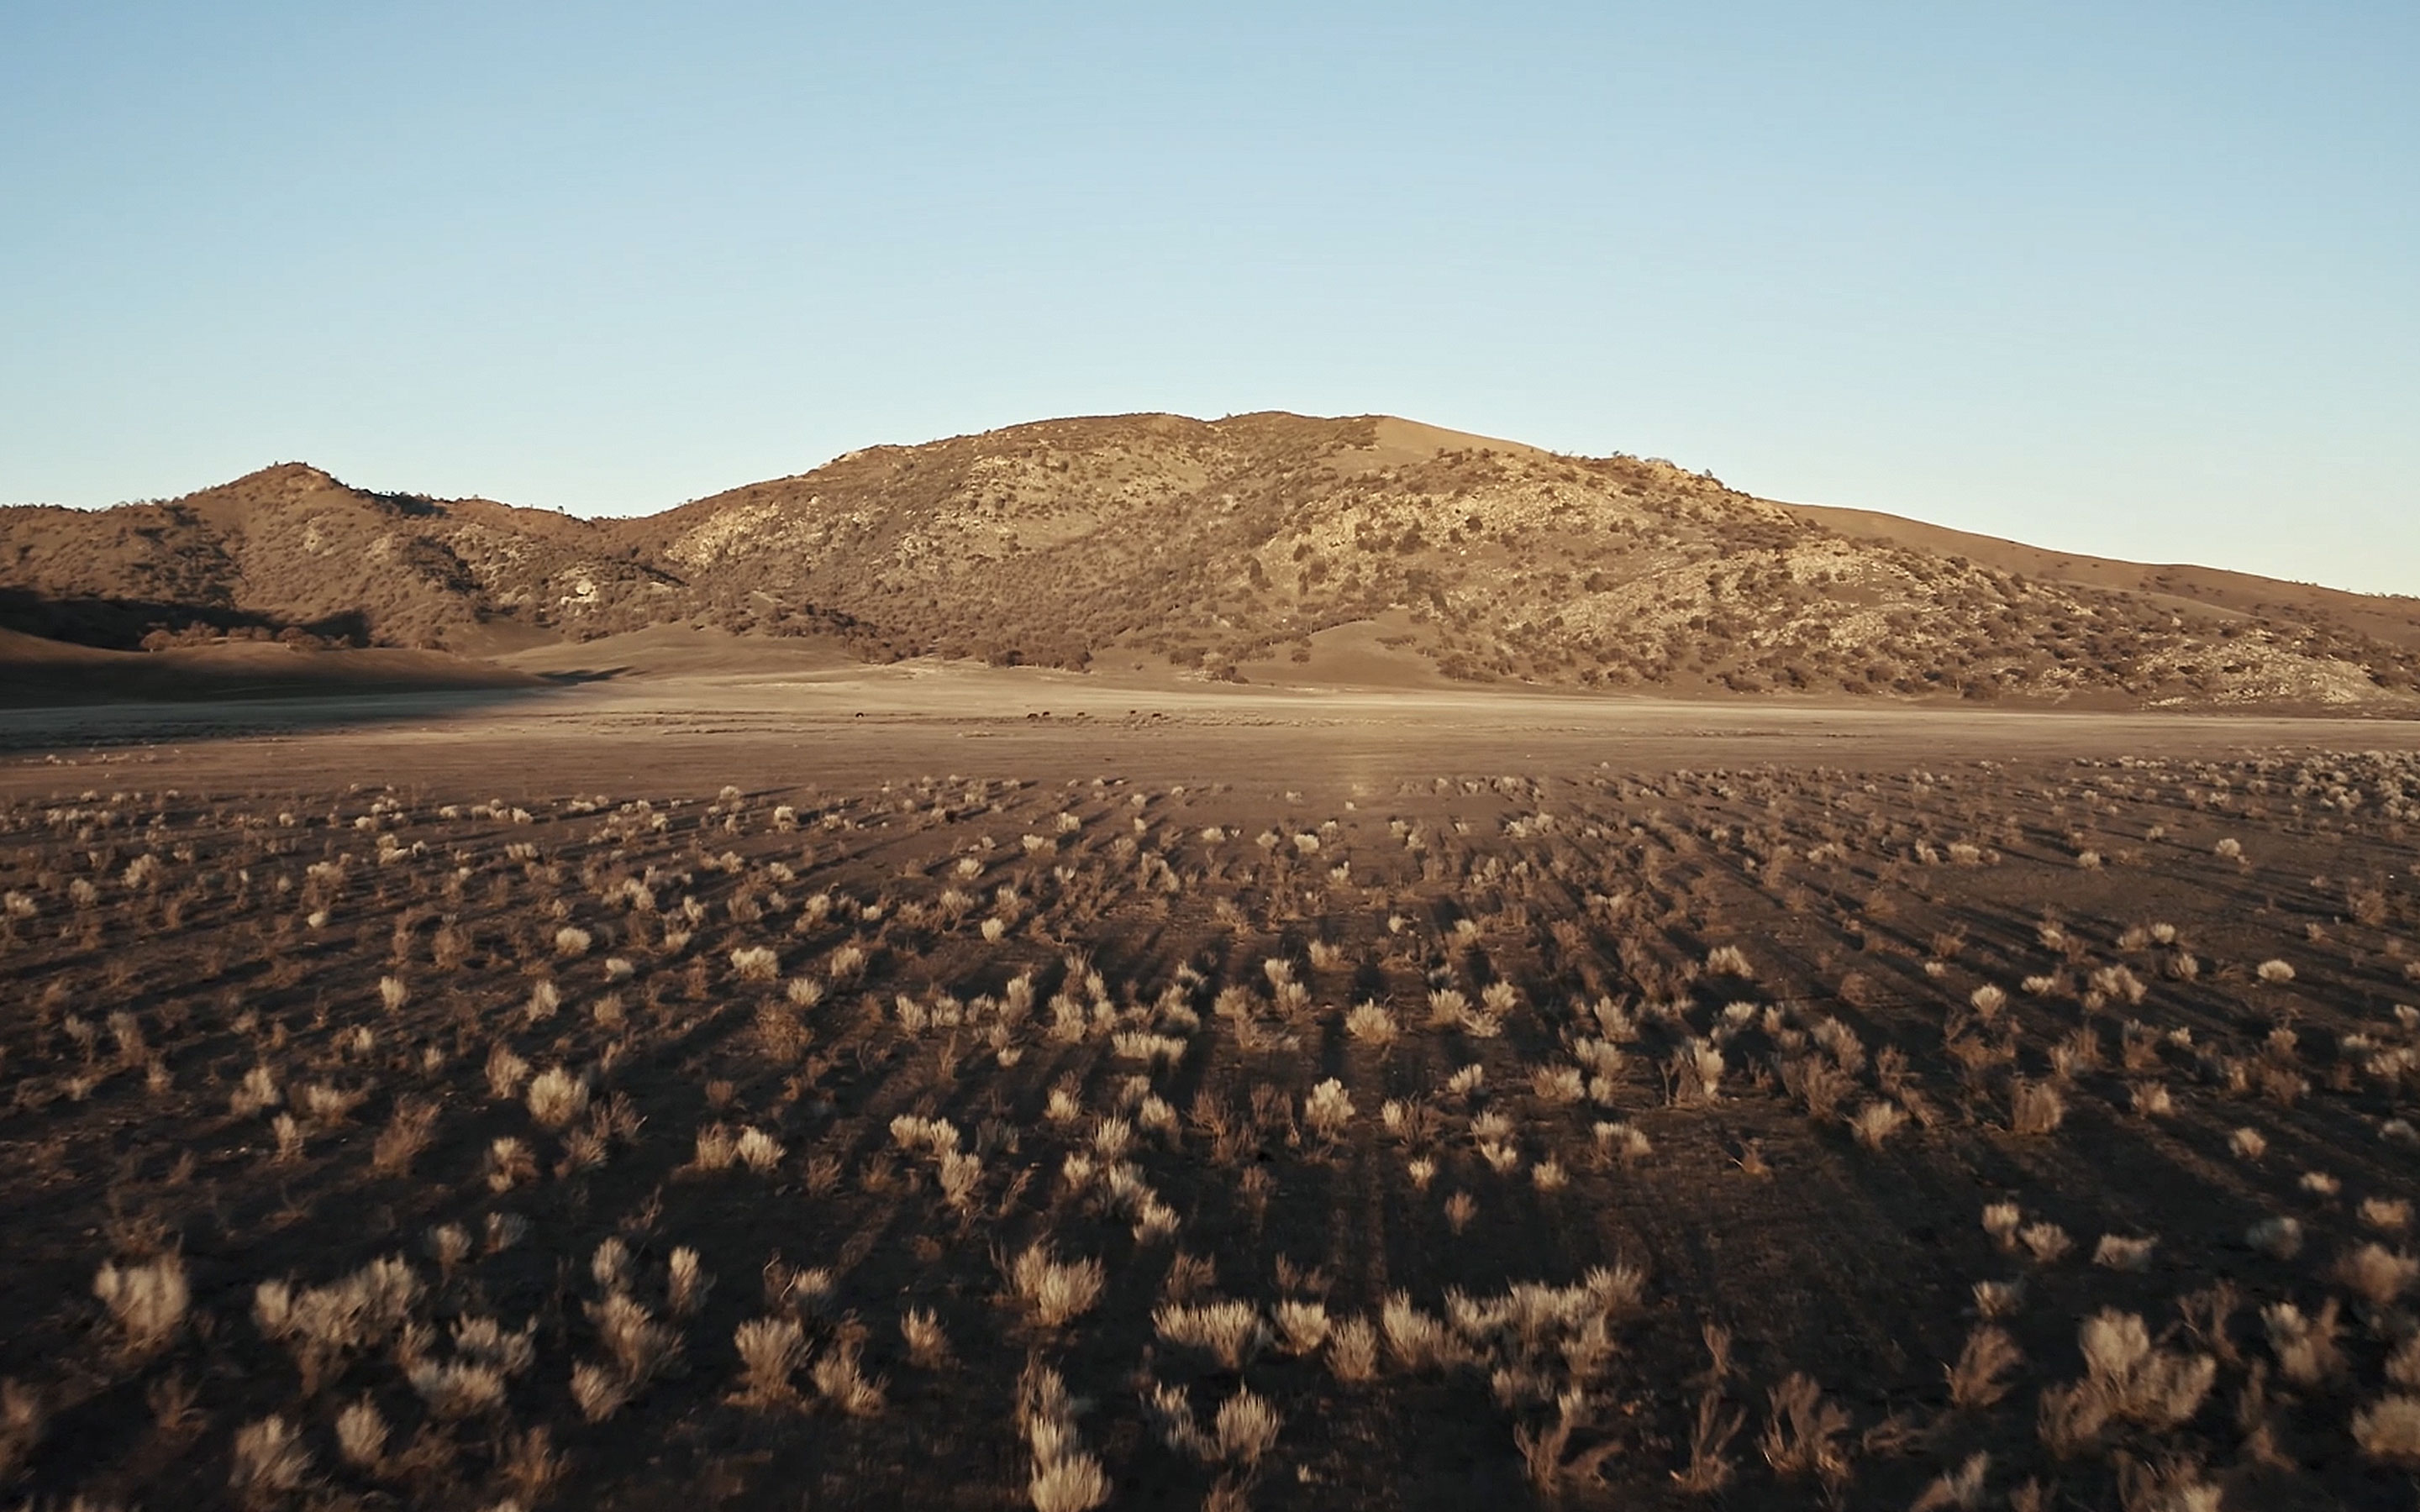 <a href="https://www.capgemini.com/news/inside-stories/mojave-desert/">The Mojave Desert: Data for tortoises and tires</a>